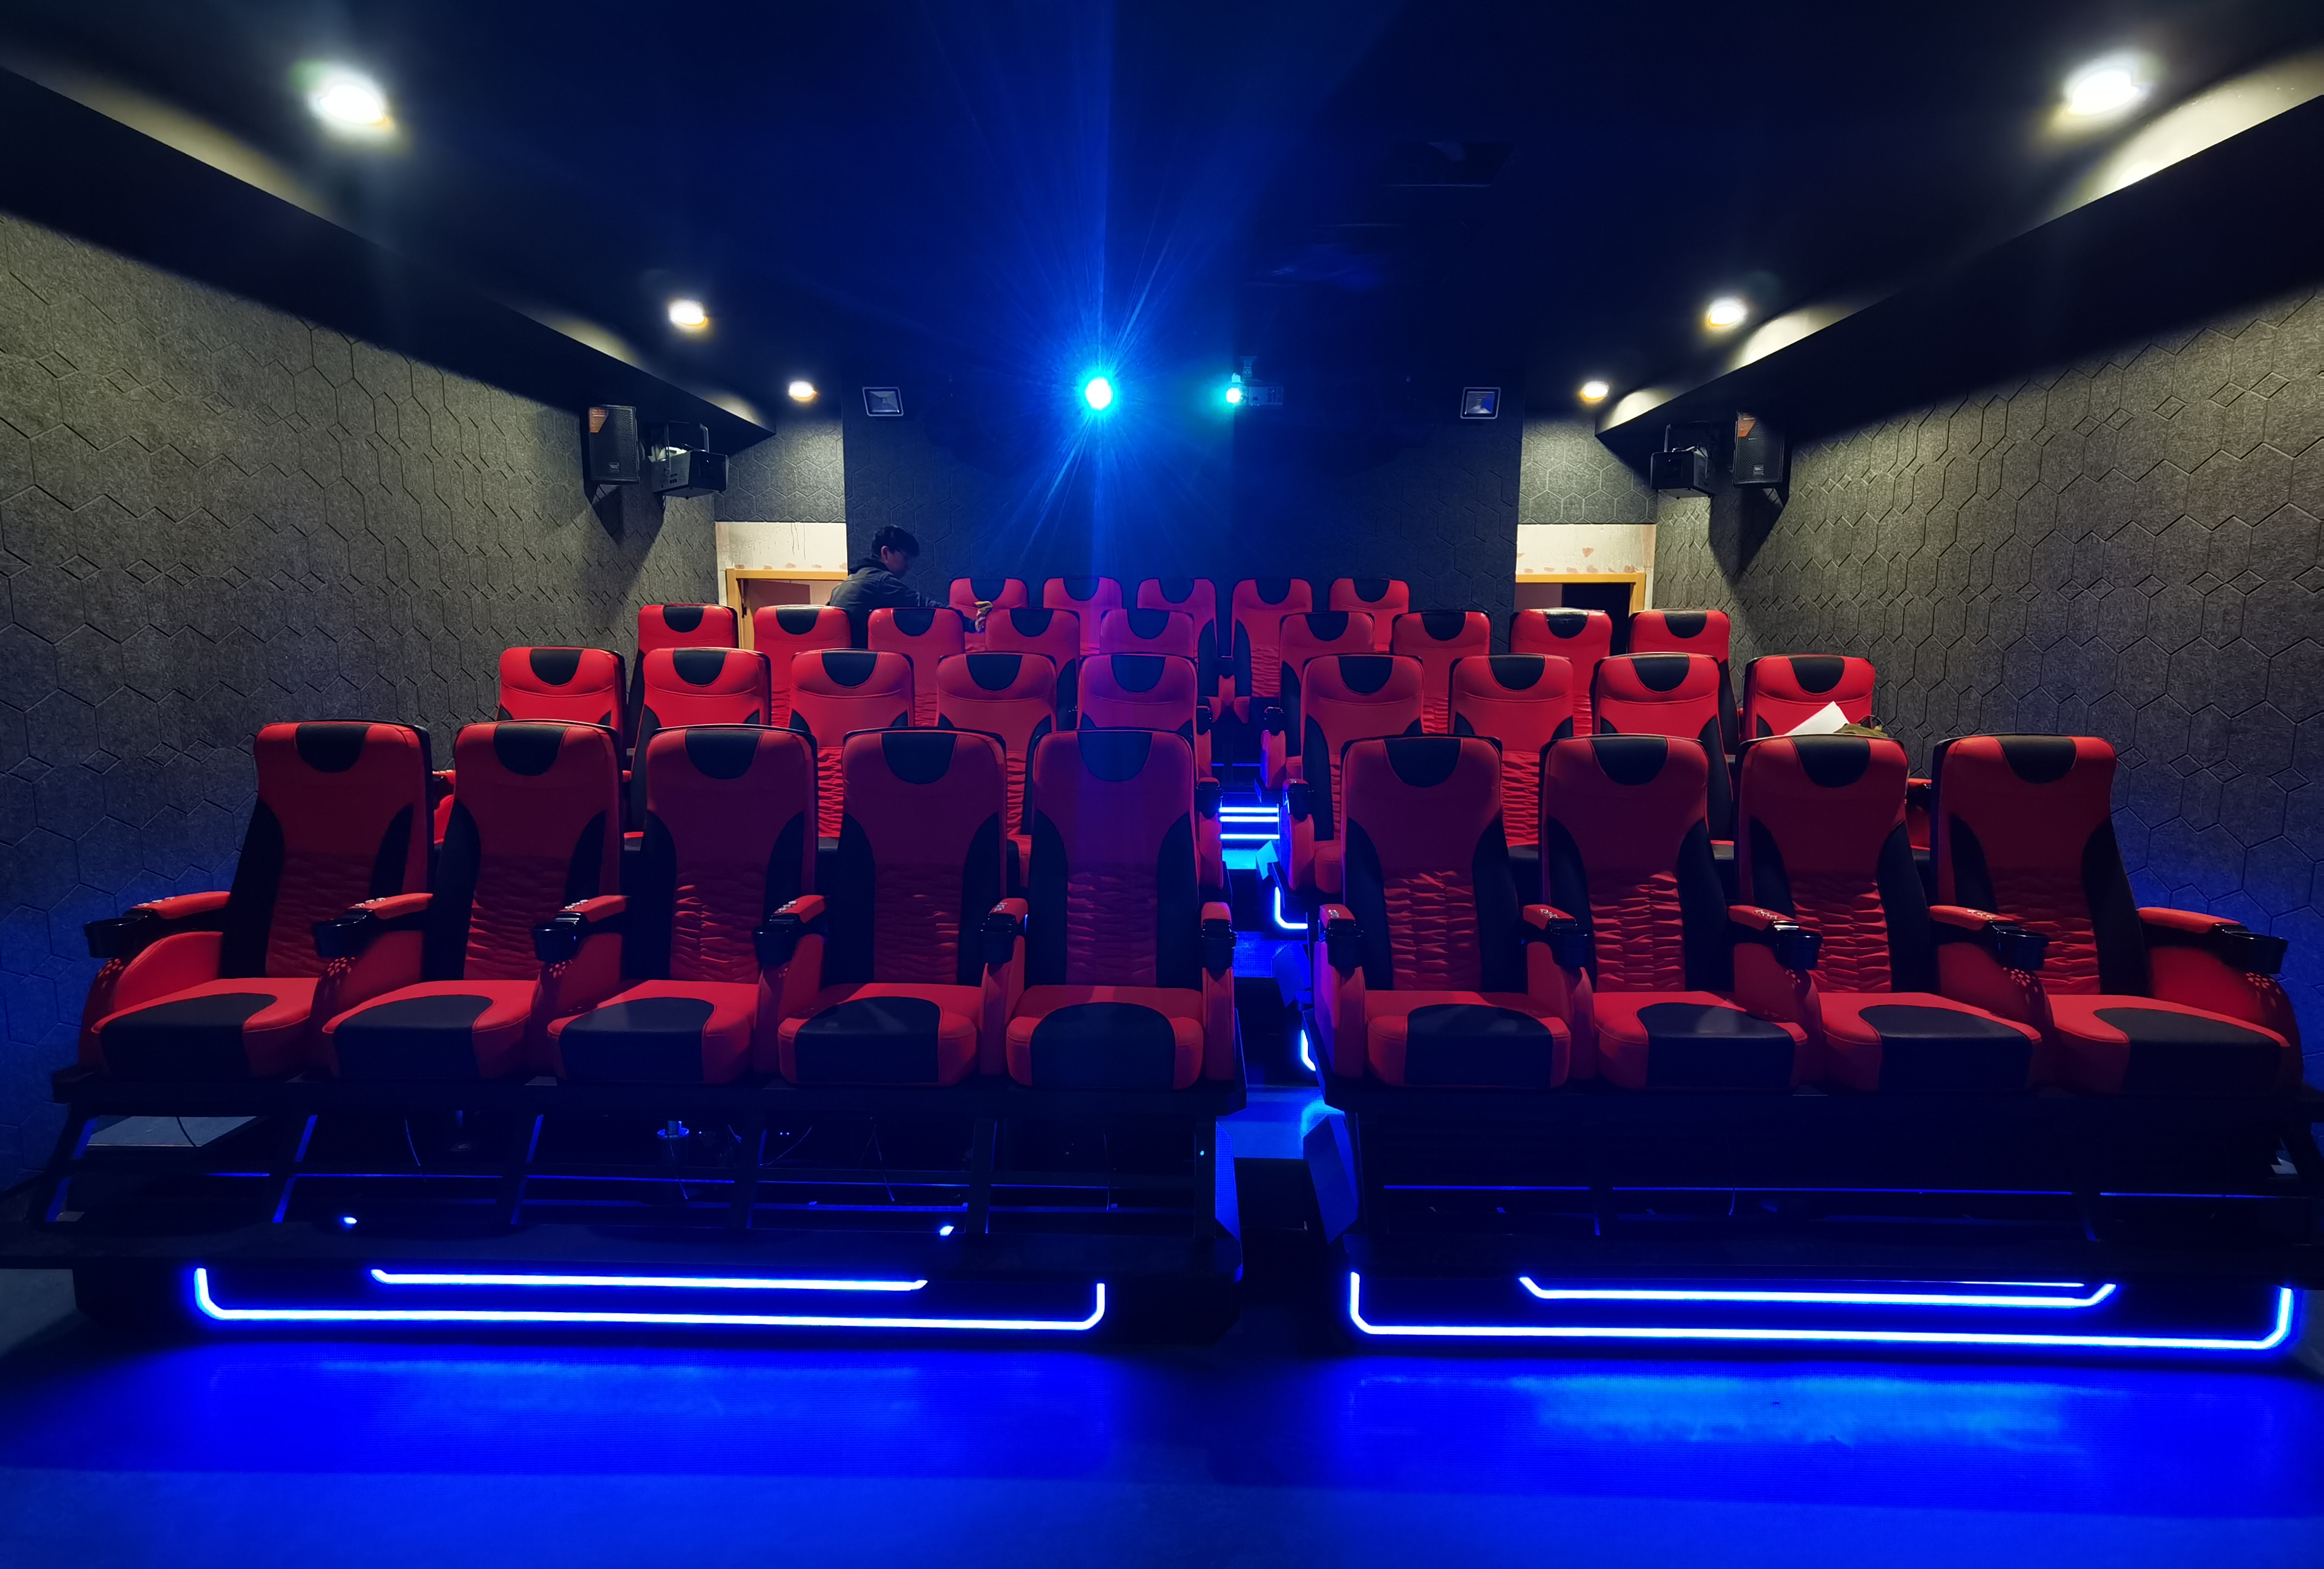 5D7D动感影院9D座椅商用大型游乐设备电机液压电影VR景区文旅项目